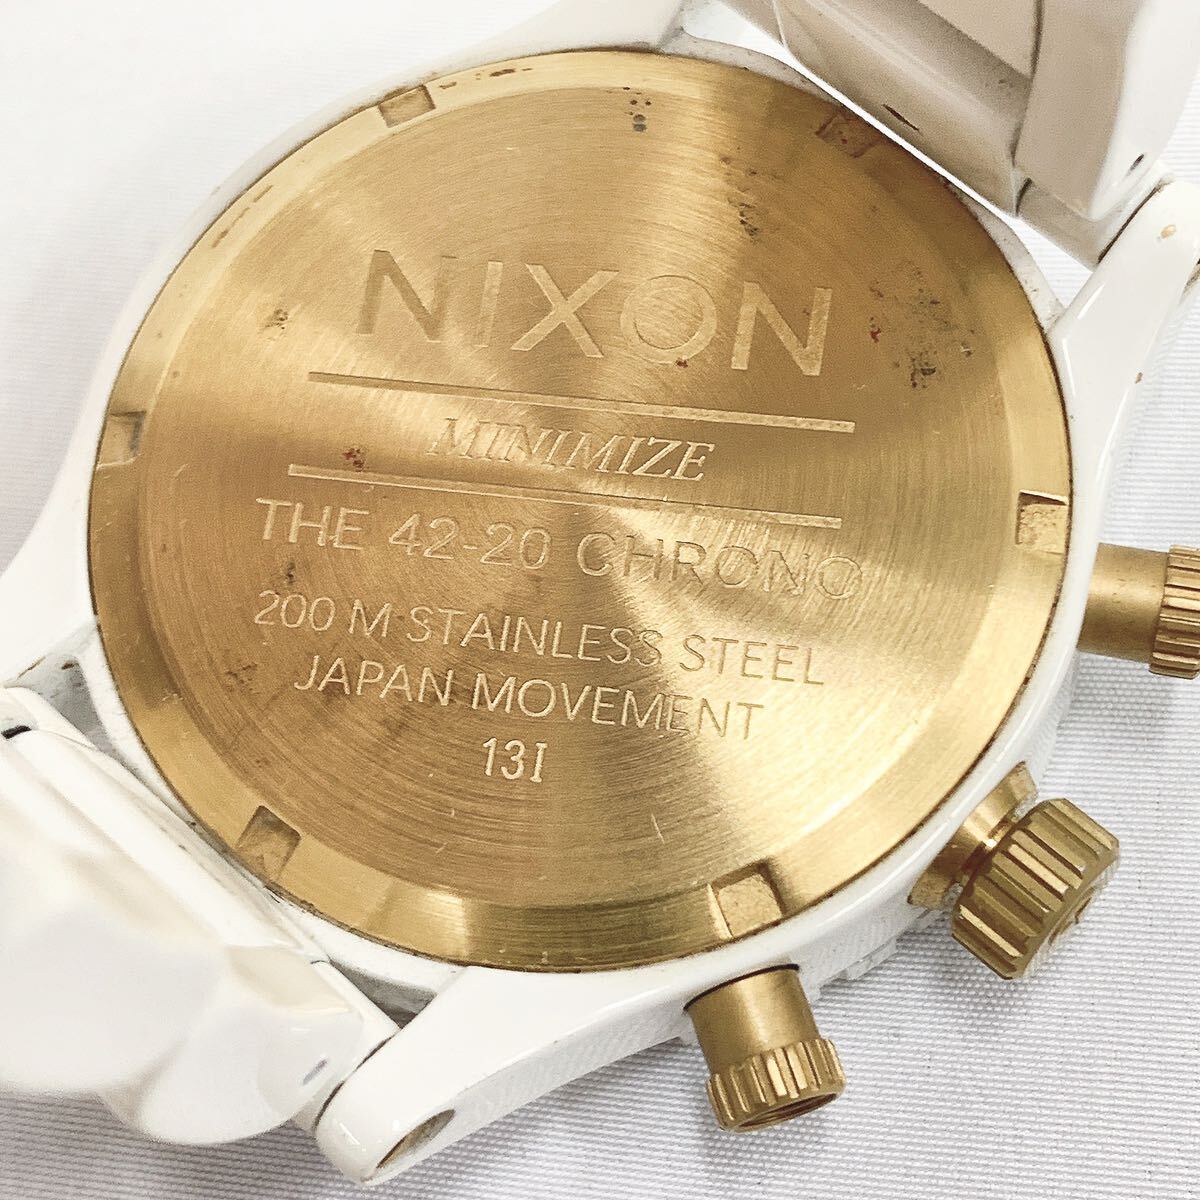 NIXON ニクソン MINIMIZE THE 42-20 CHRONO クオーツ メンズ腕時計 ホワイト×ゴールド 白文字盤 クロノグラフ R店0506☆_画像5